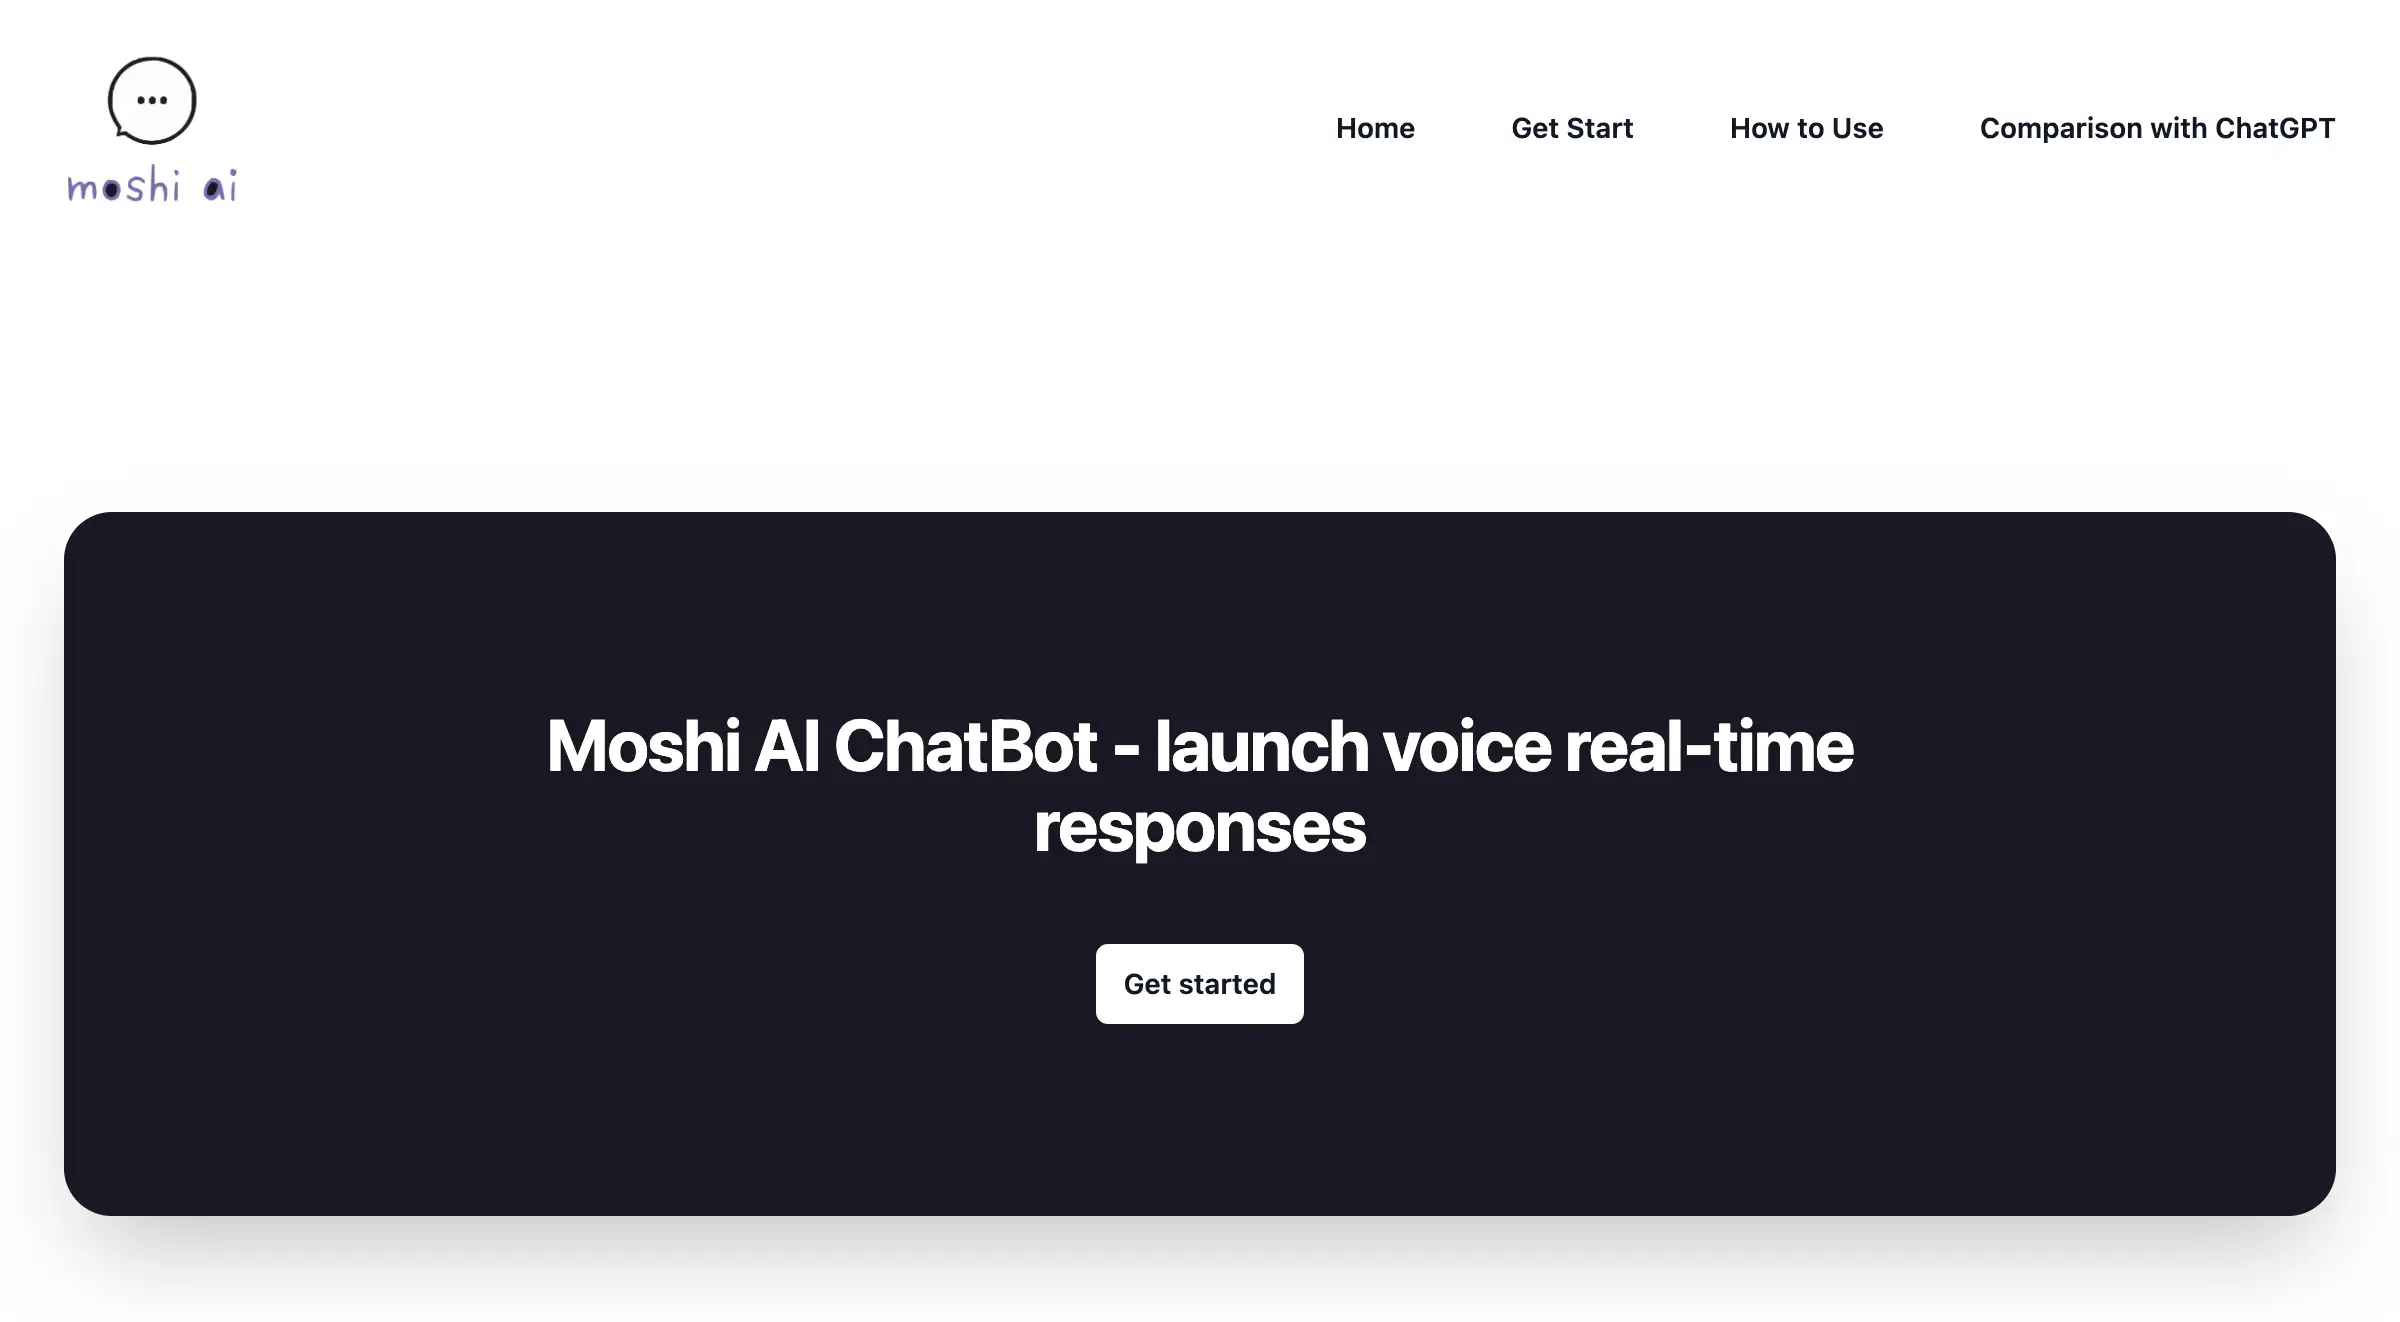 Moshi AI ChatBot